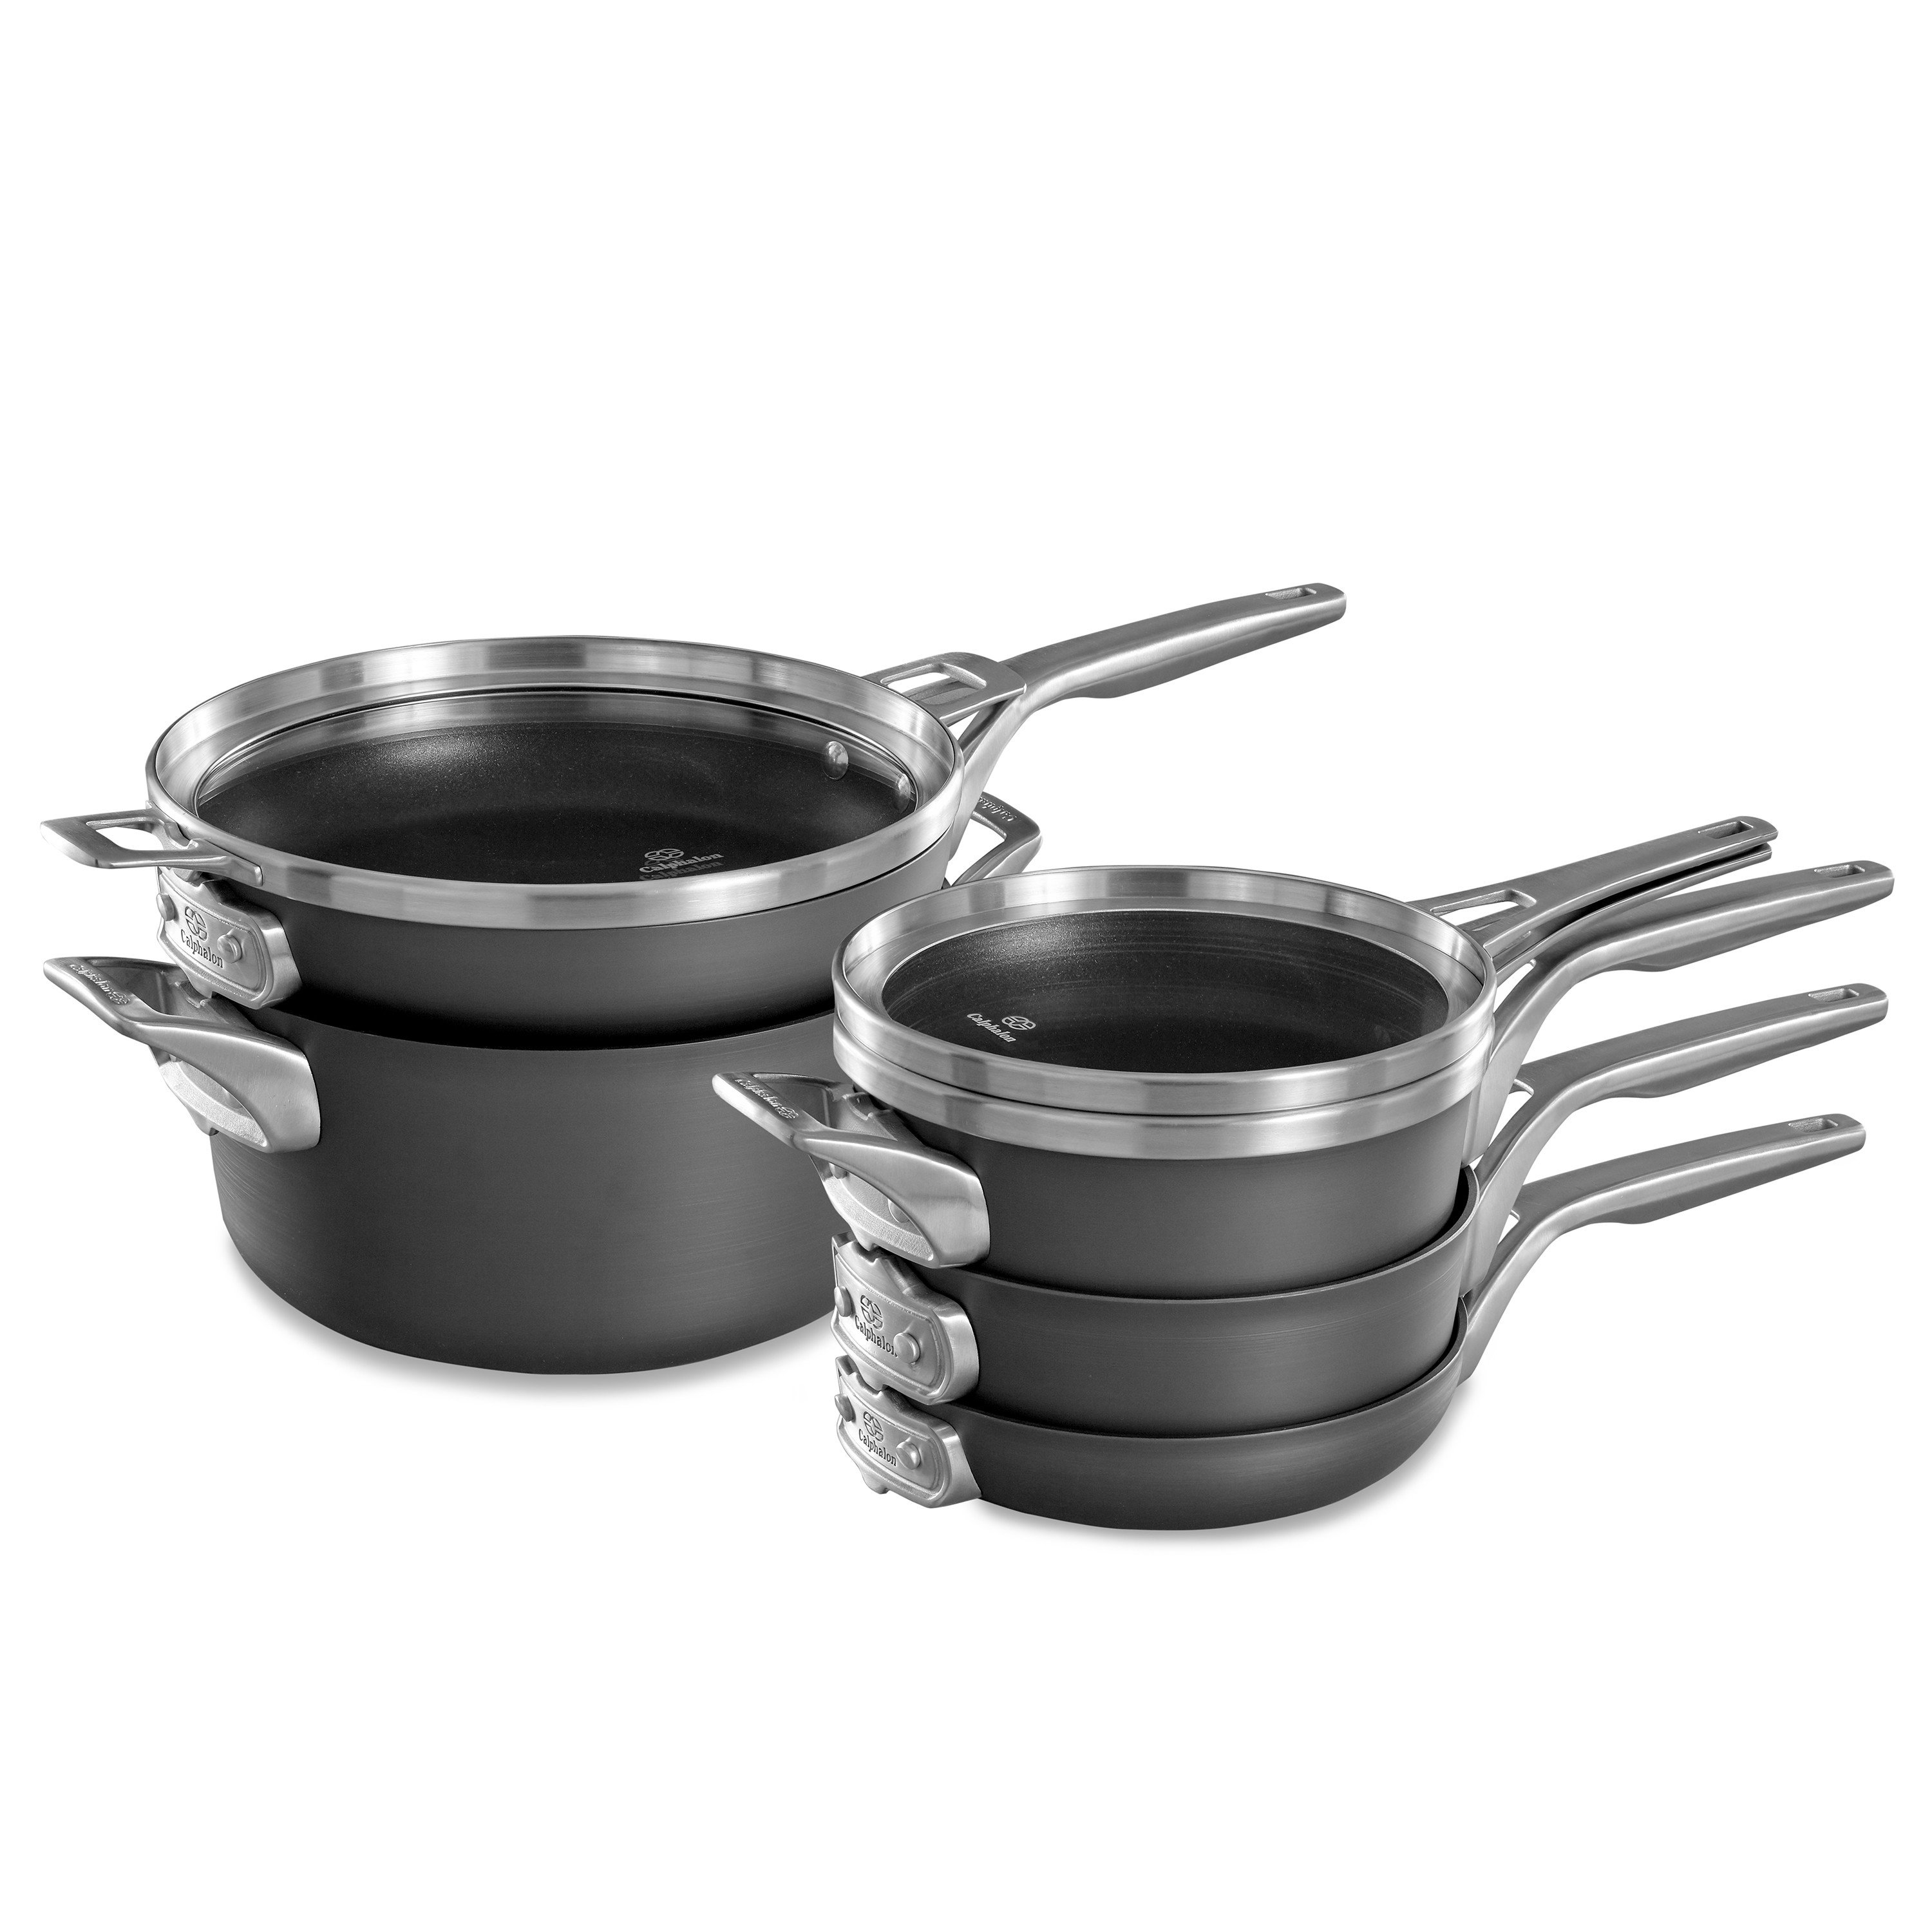 https://assets.wfcdn.com/im/01406447/compr-r85/2152/215206243/calphalon-8-piece-aluminum-non-stick-cookware-set.jpg